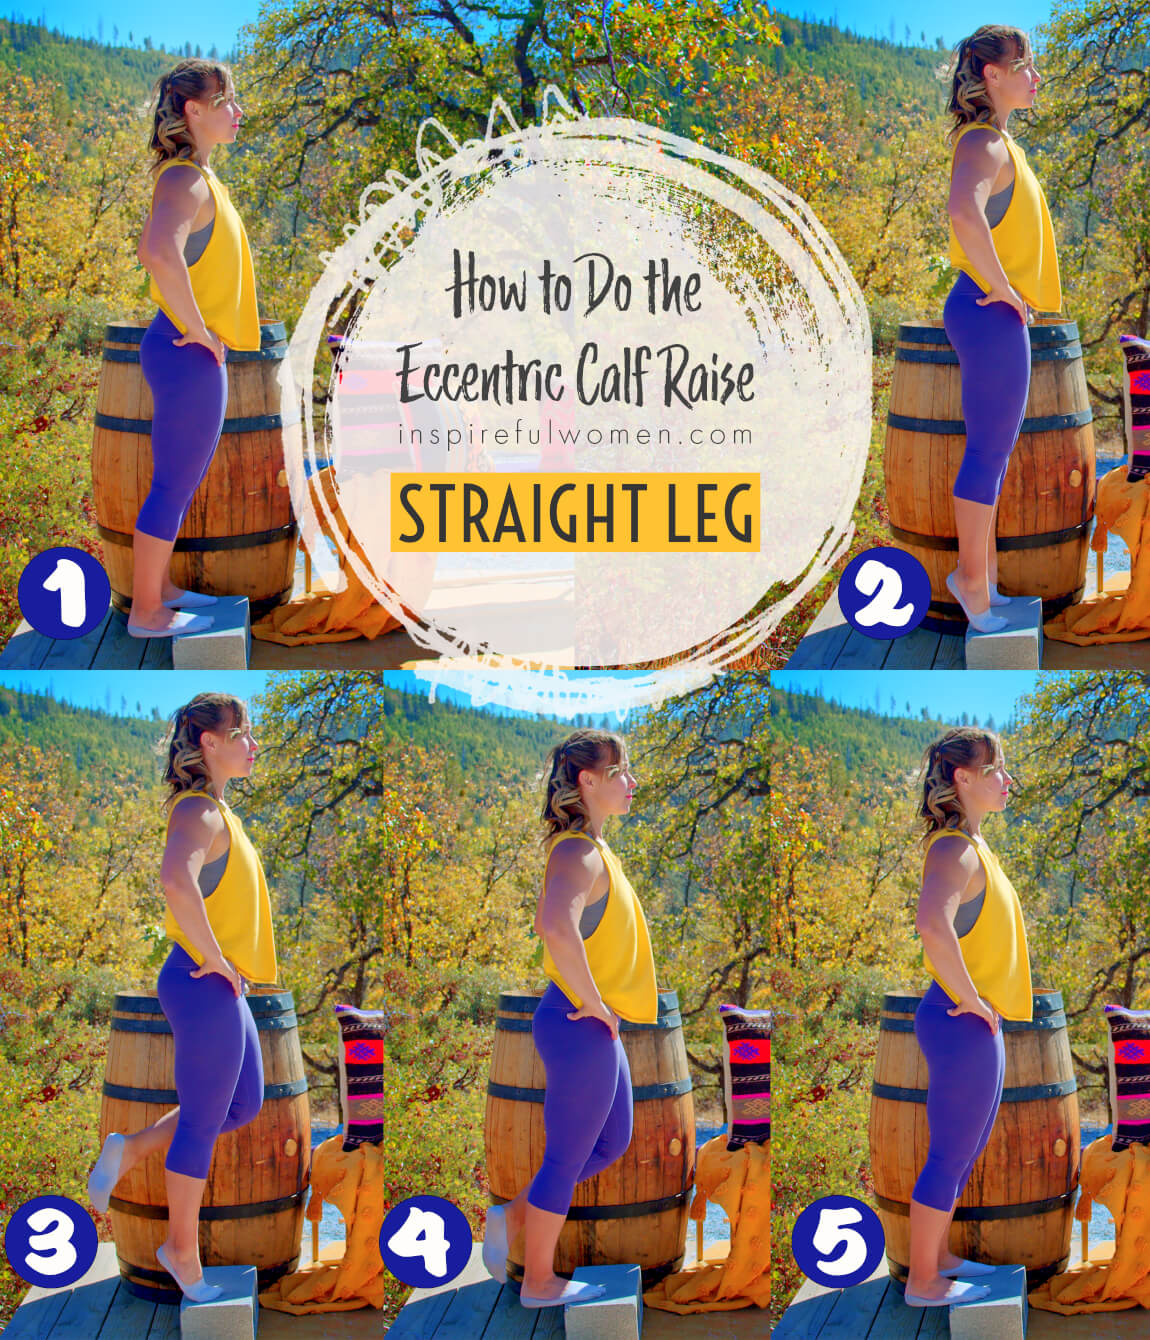 how-to-straight-leg-eccentric-calf-raises-gastrocnemius-soleus-exercise-at-home-women-40-plus